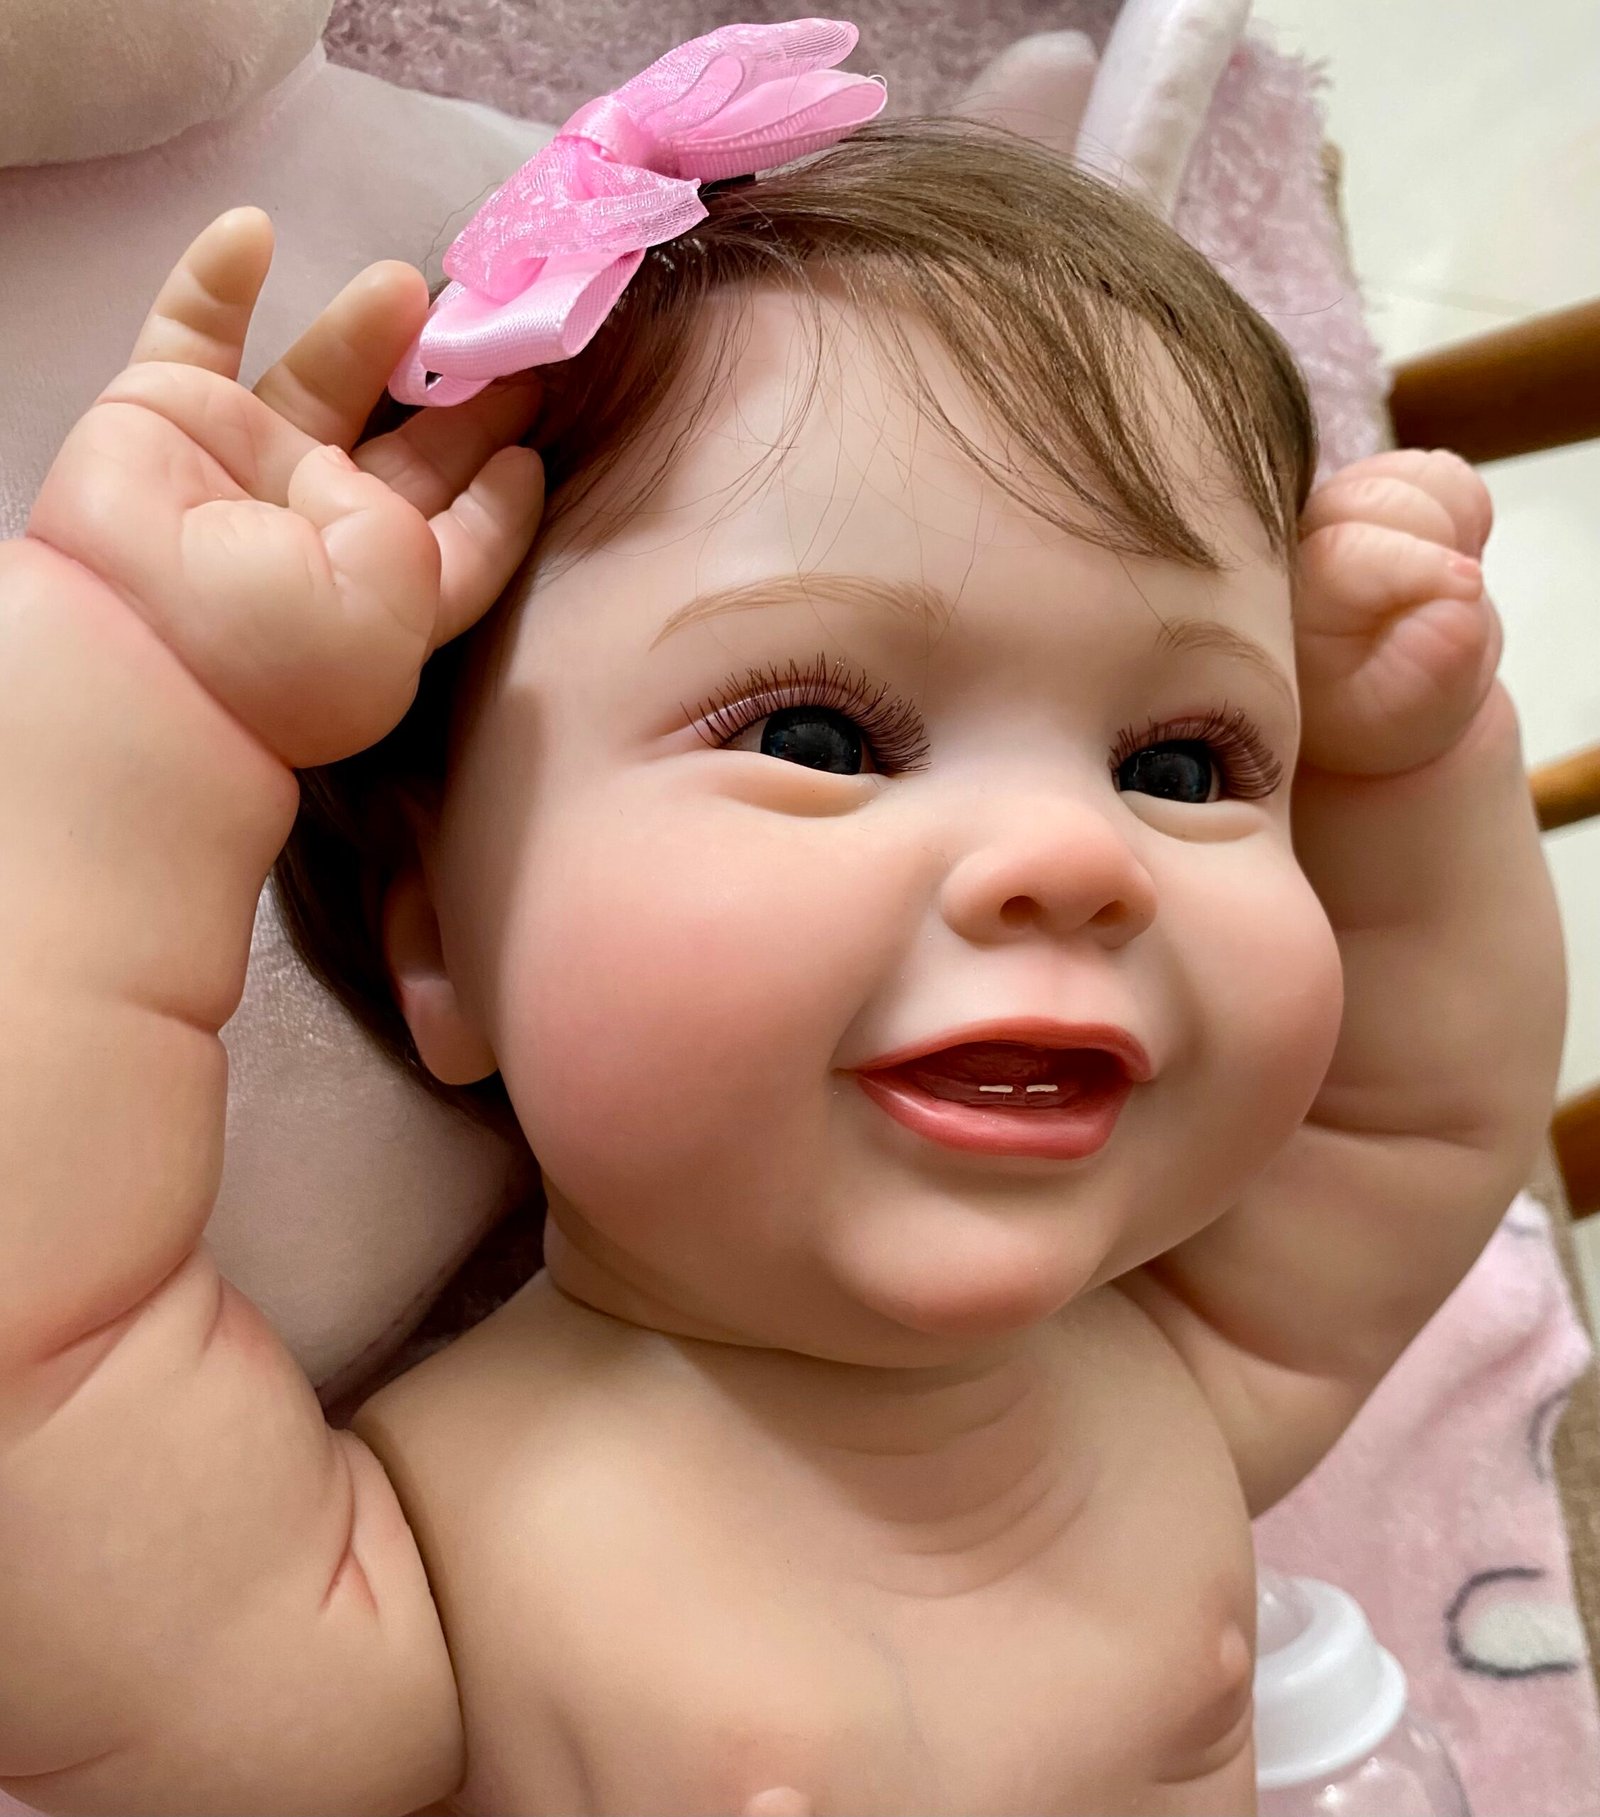 Boneca bebe reborn barata: Com o melhor preço